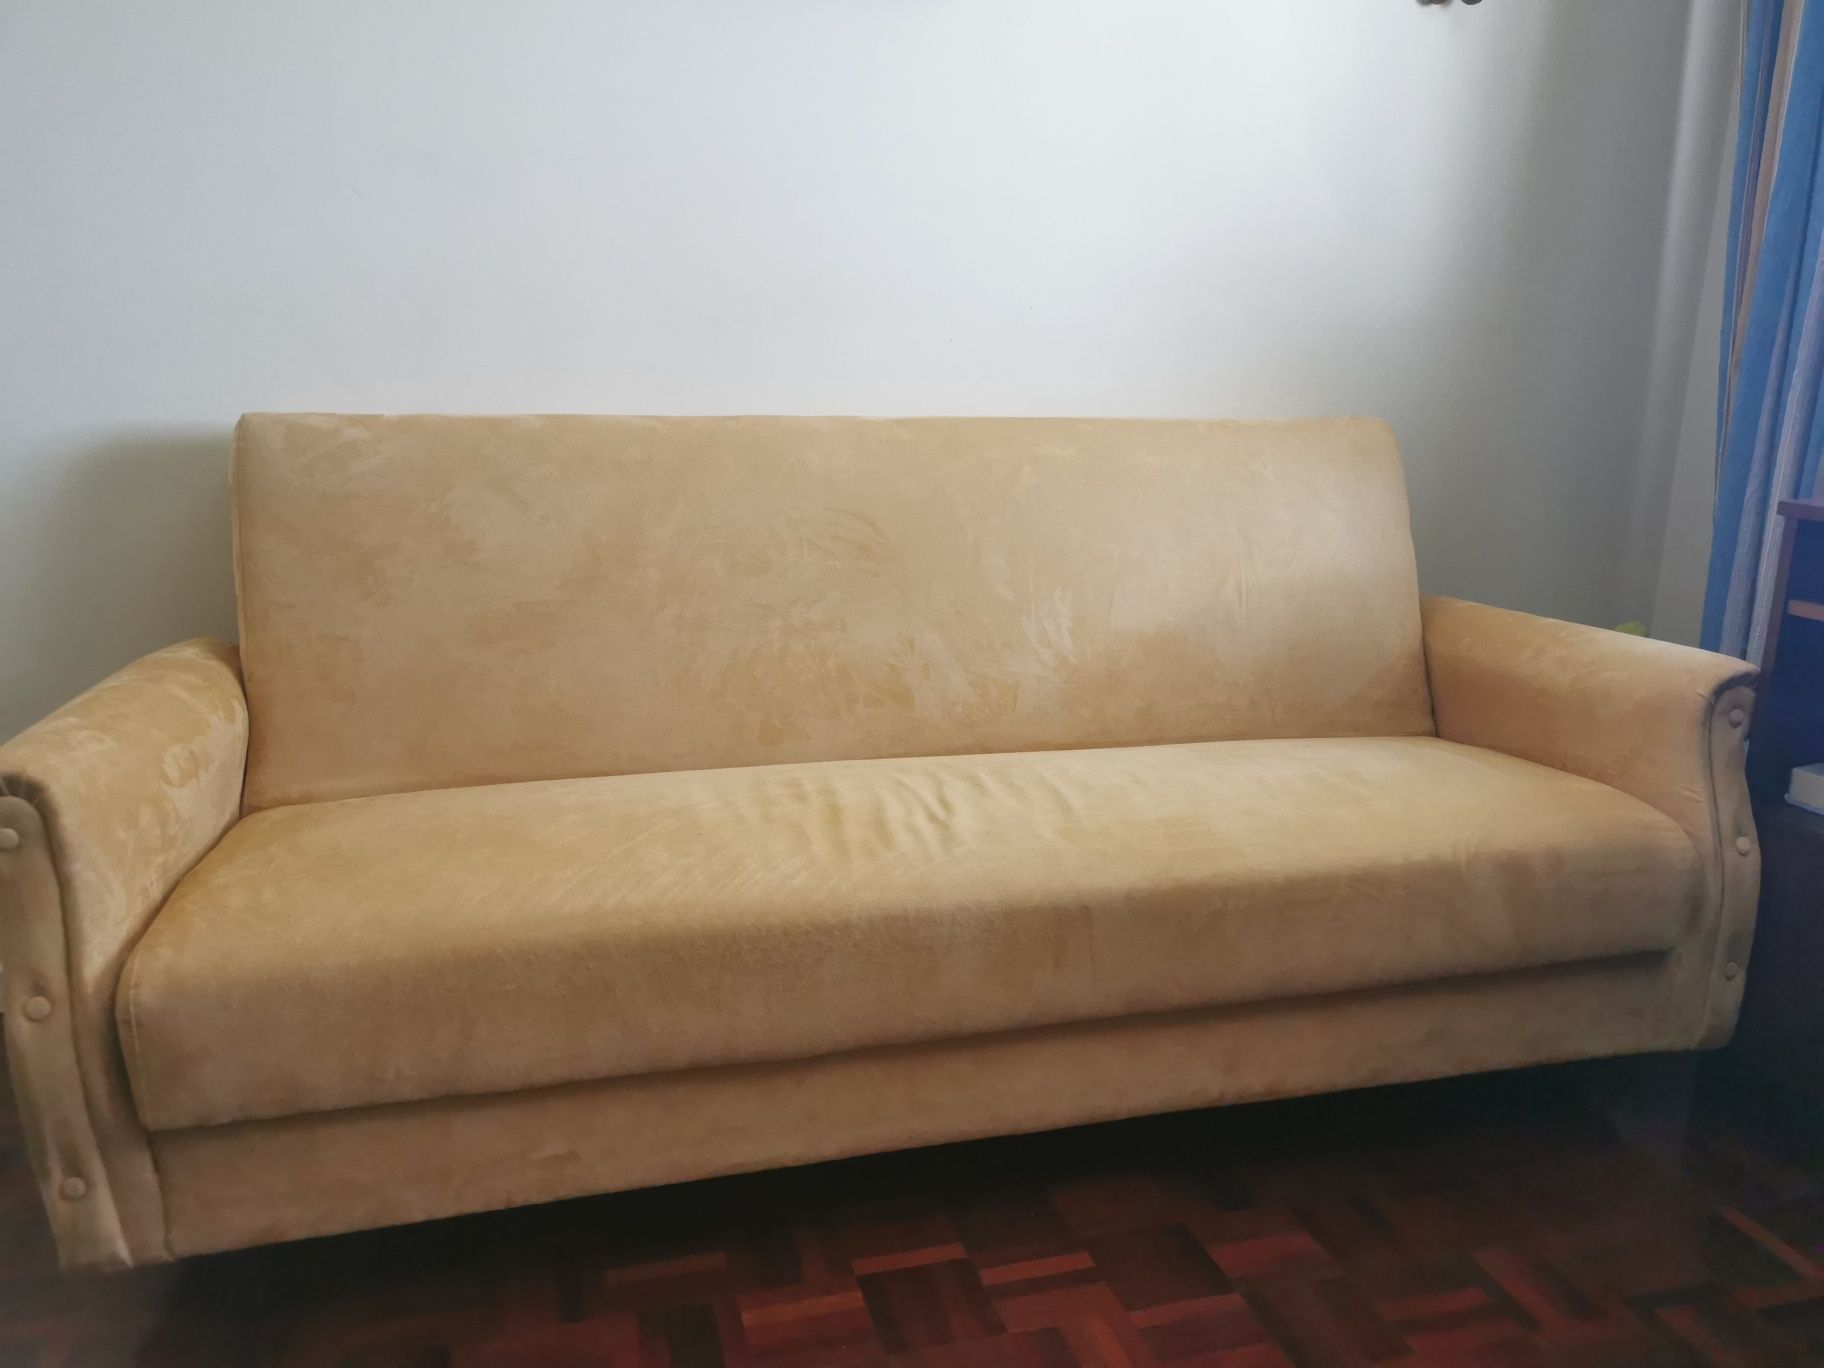 Sofá cama nobuk com 1.90 de comprimento